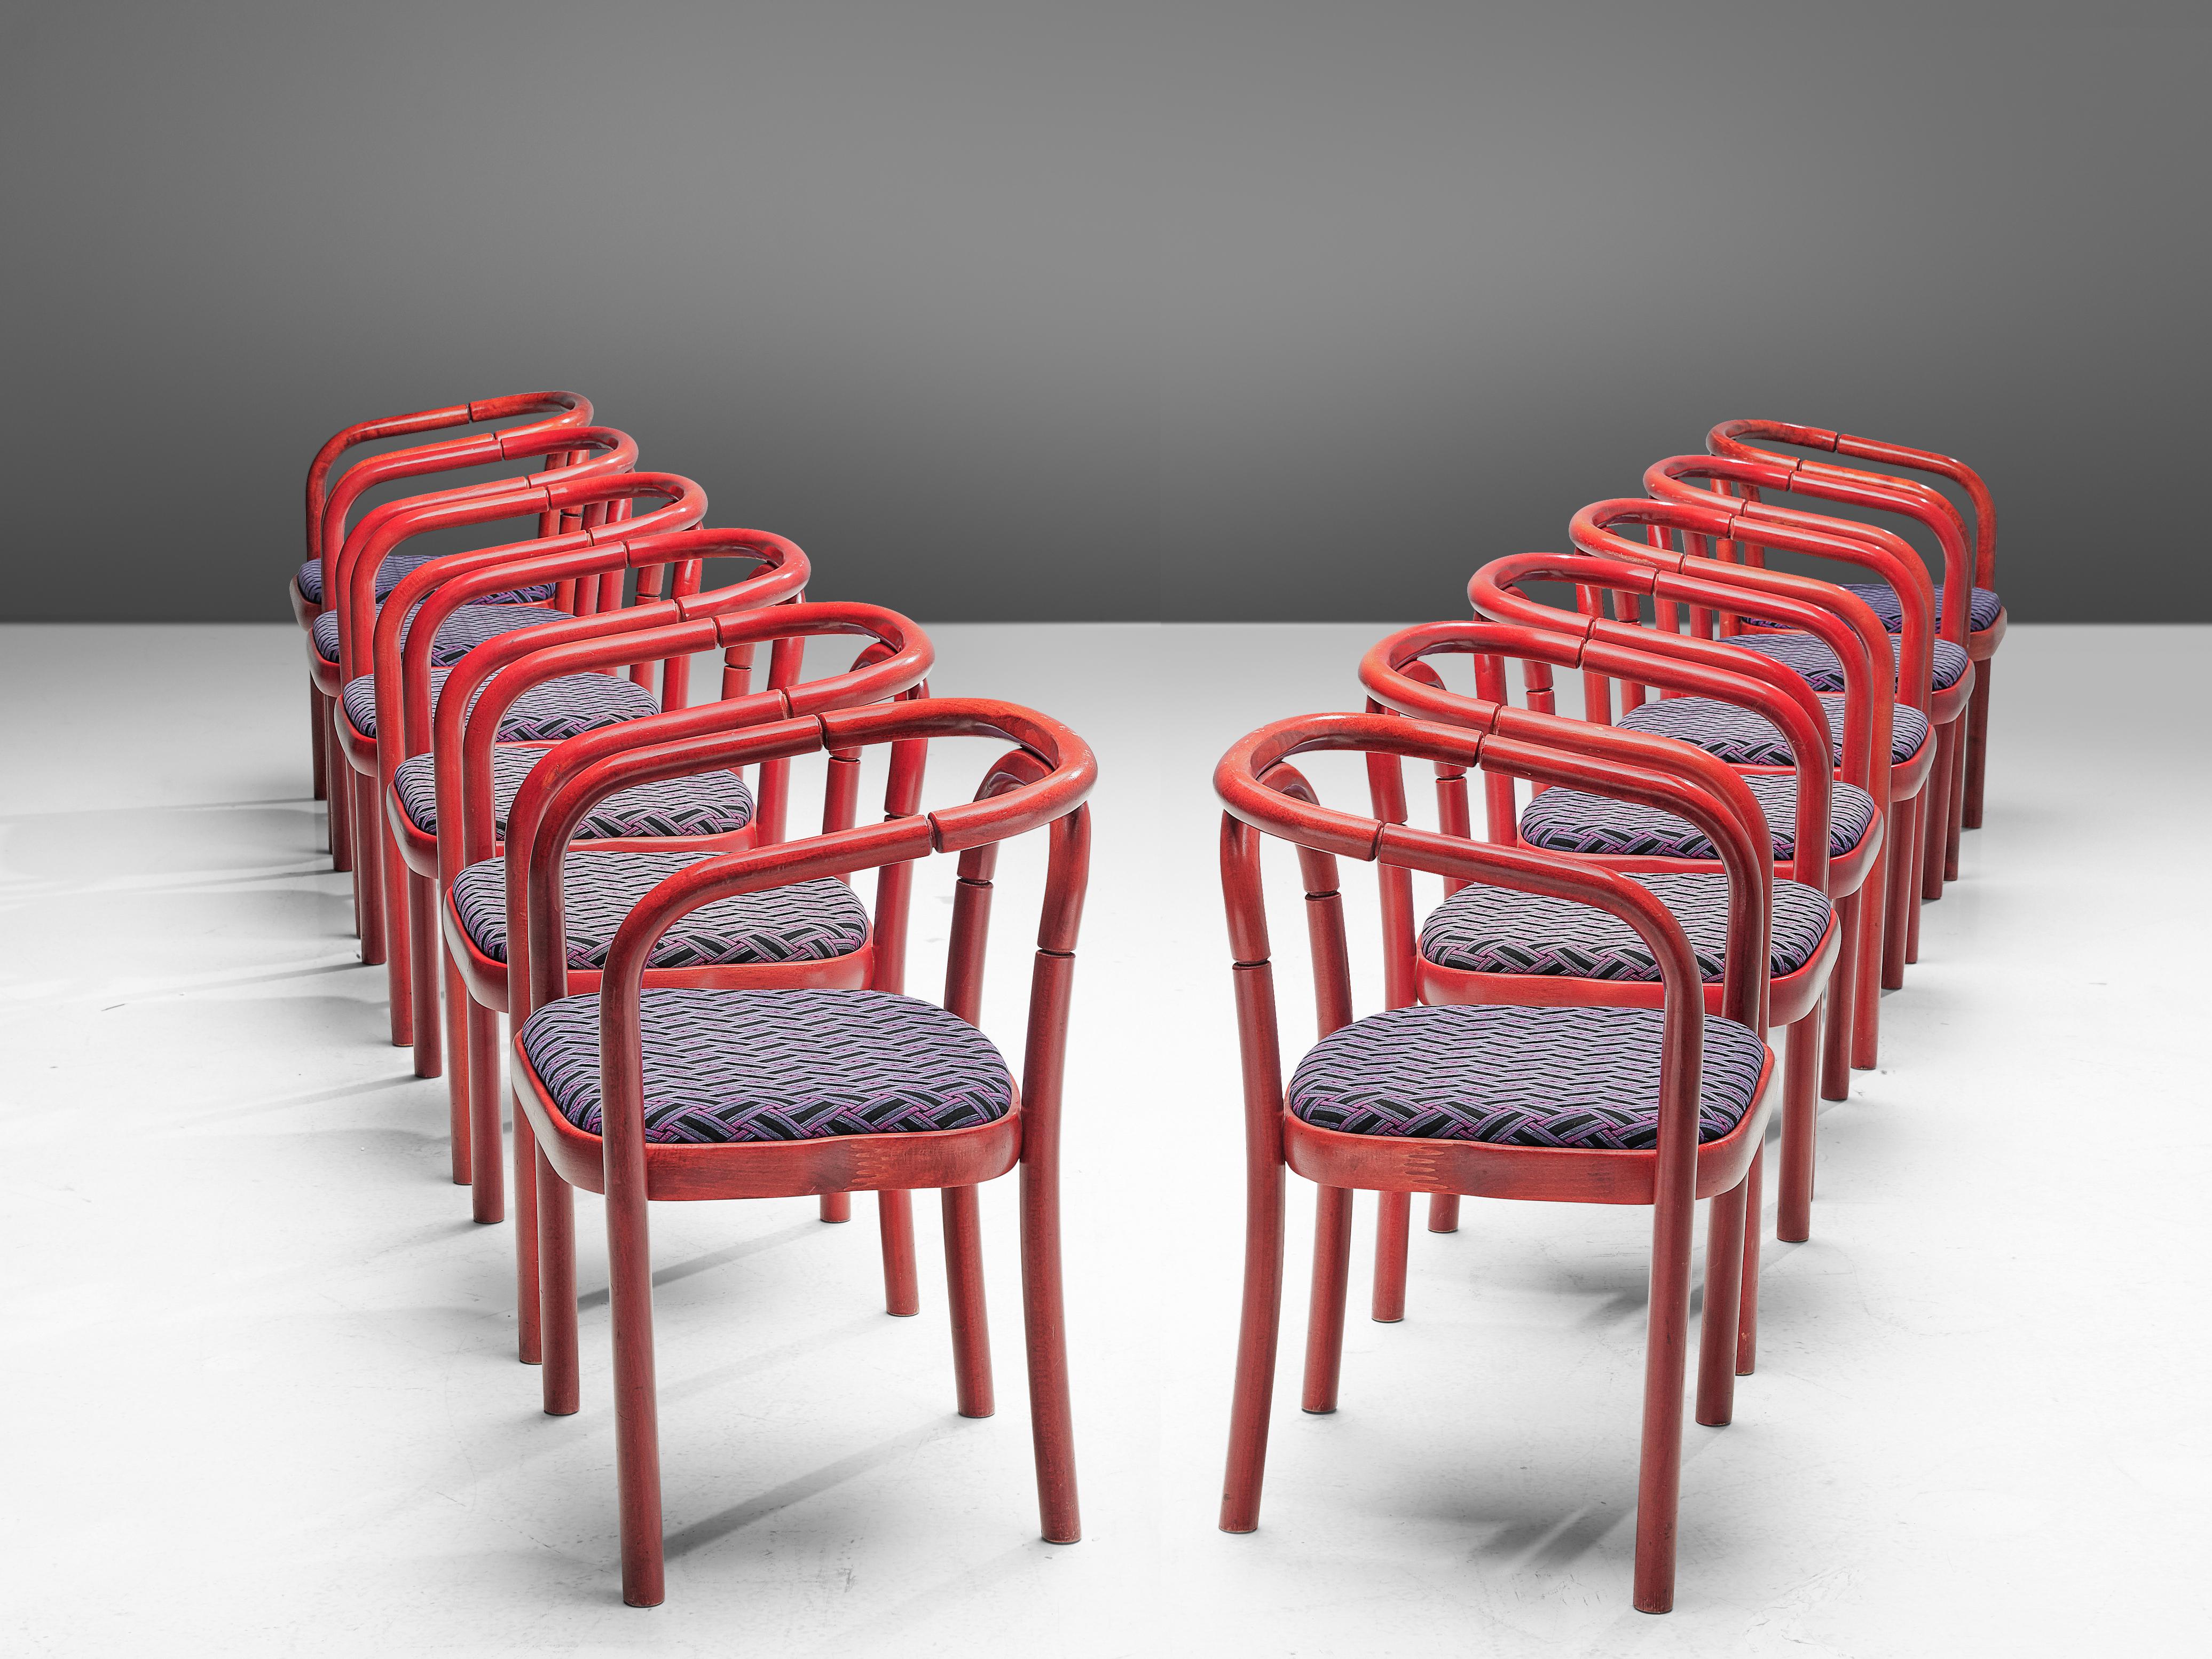 Antonín Šuman pour Ton, +75 fauteuils modèle 'E4309', hêtre laqué, tissu, République tchèque, 1977 

Un grand ensemble de chaises de salle à manger conçues par Antonín Šuman et fabriquées par TON. Ces chaises sont dotées d'un magnifique cadre en